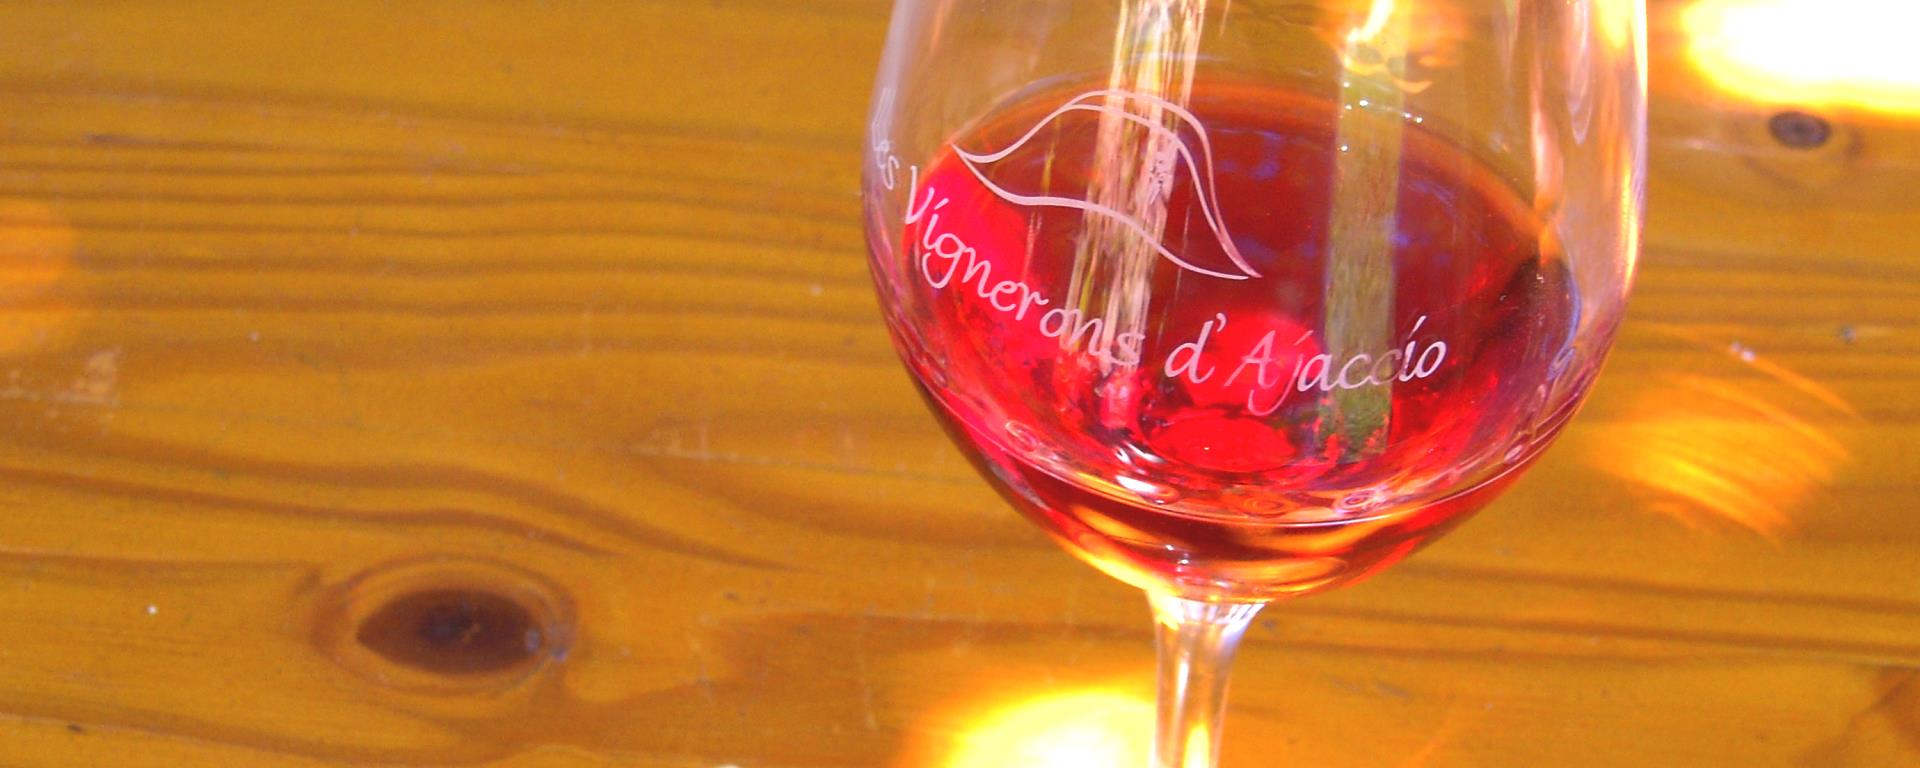 2013- Domaine de Pietrella- verre de rouge nc